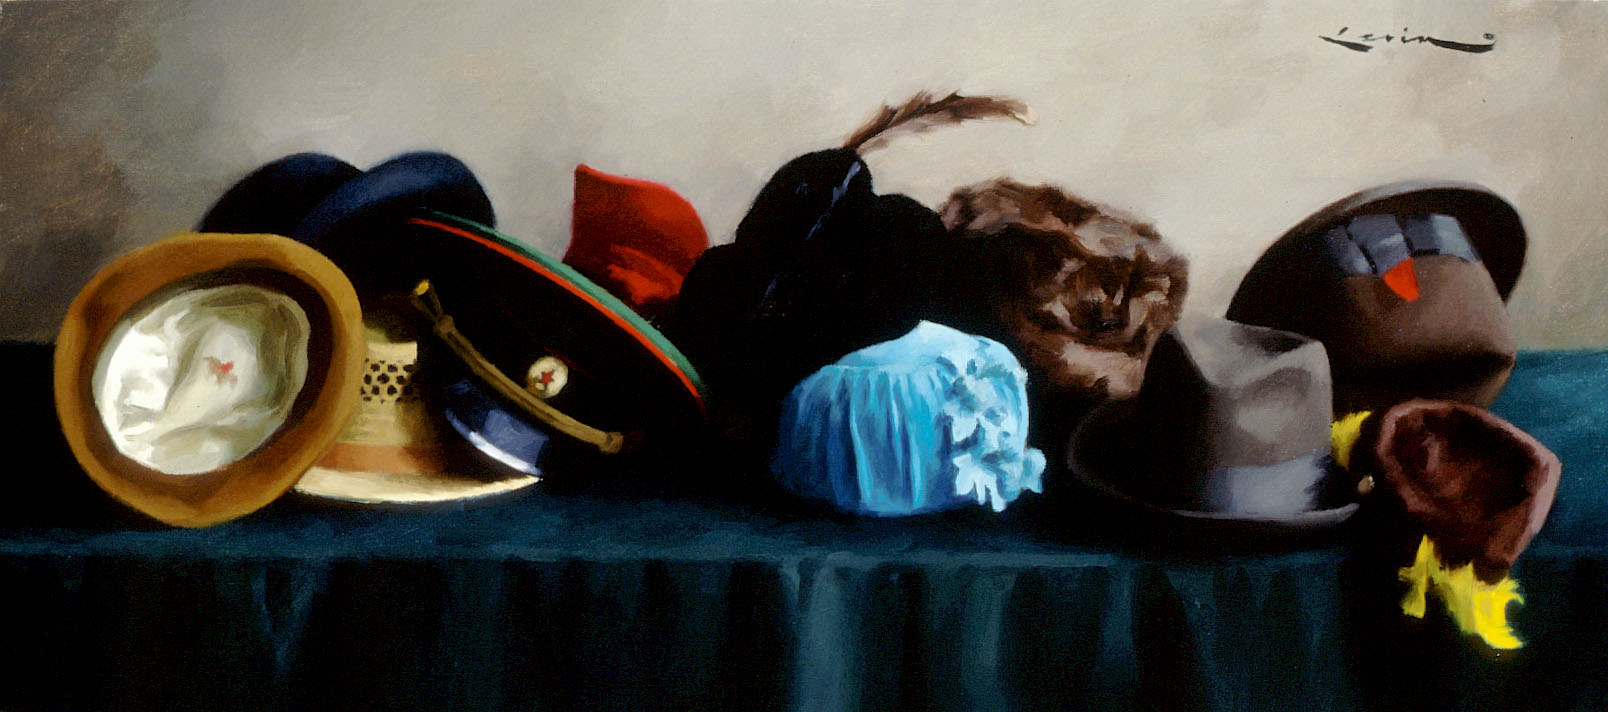 Hats by Steven J Levin